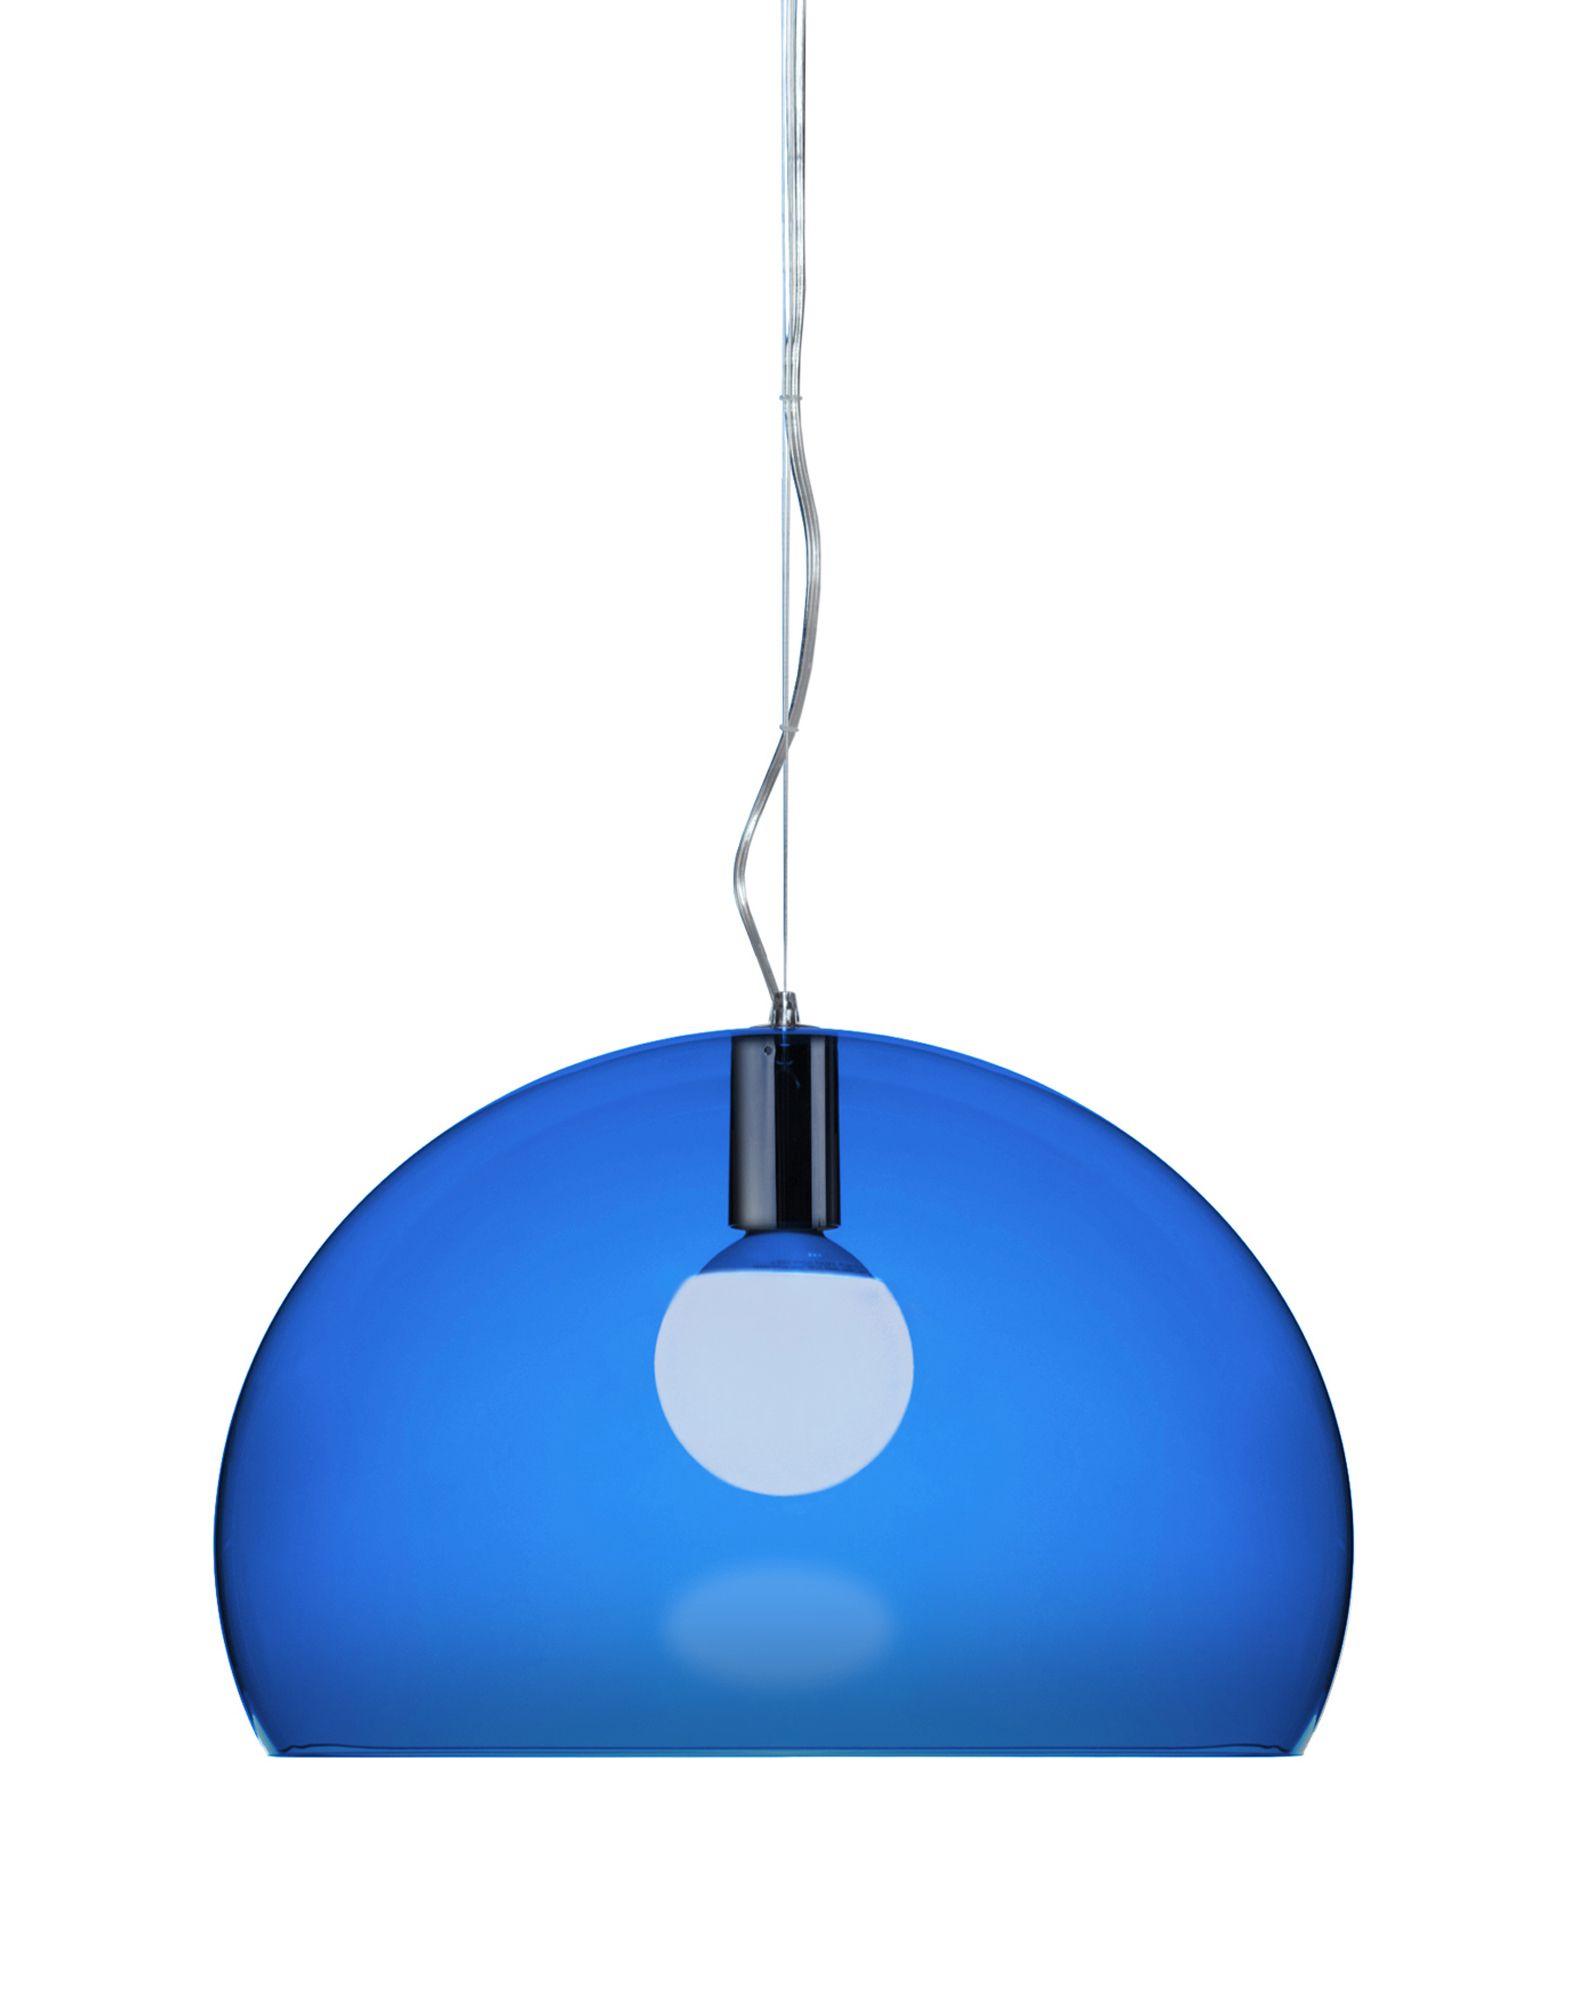 Suspensie Kartell FL/Y design Ferruccio Laviani E27 max 15W LED h33cm albastru transparent Kartell imagine reduss.ro 2022